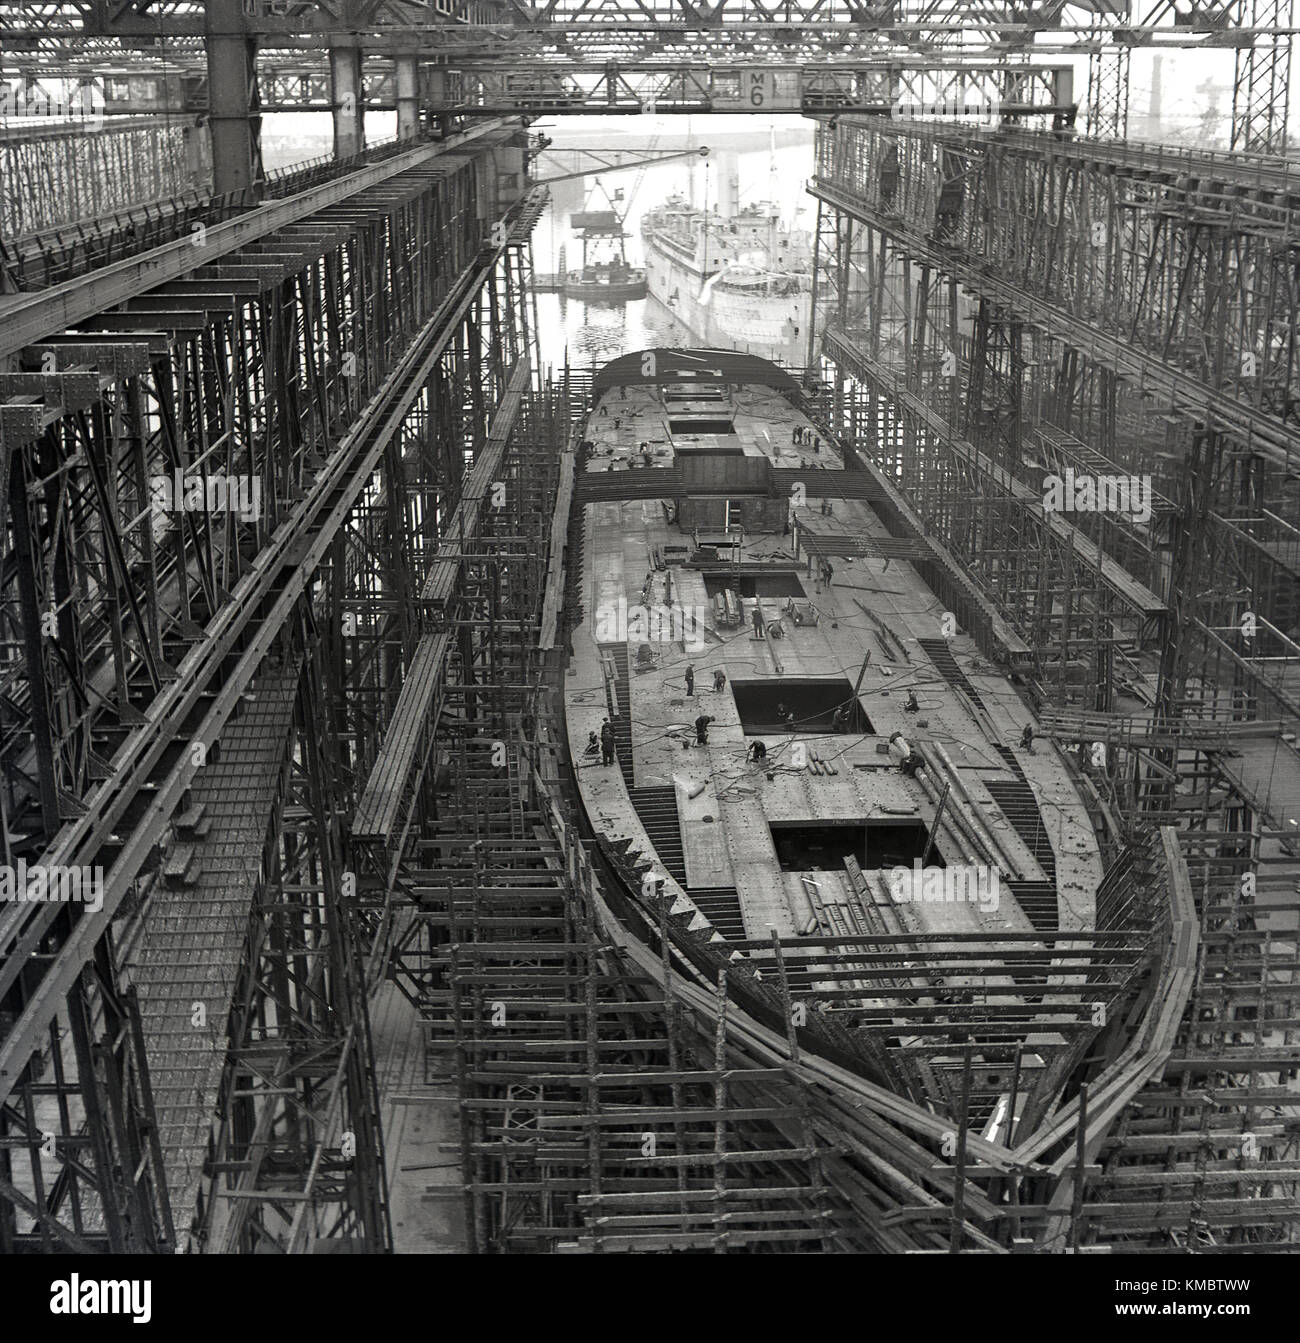 Années 1950, tableau historique d'un navire en construction dans une cale sèche sous le portique Arrol au célèbre chantier naval Harland and Wolff, où le Titanic et autres grands navires de classe olympique ont été construites, Belfast, Irlande du Nord. Banque D'Images